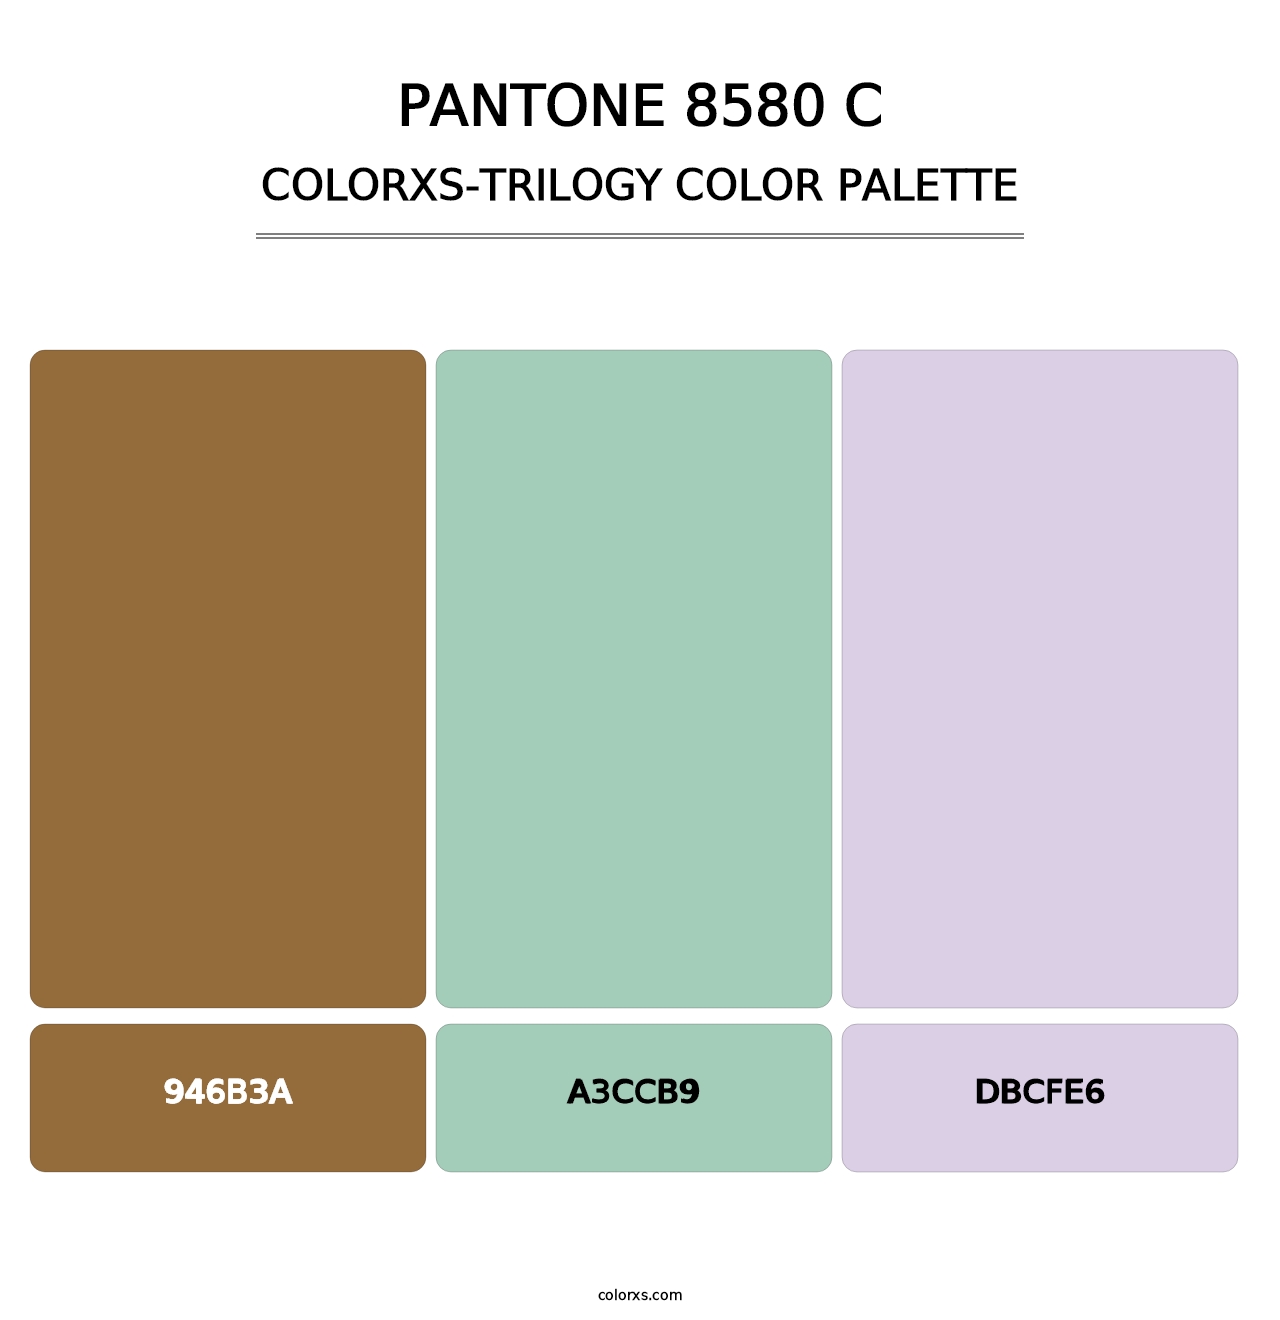 PANTONE 8580 C - Colorxs Trilogy Palette